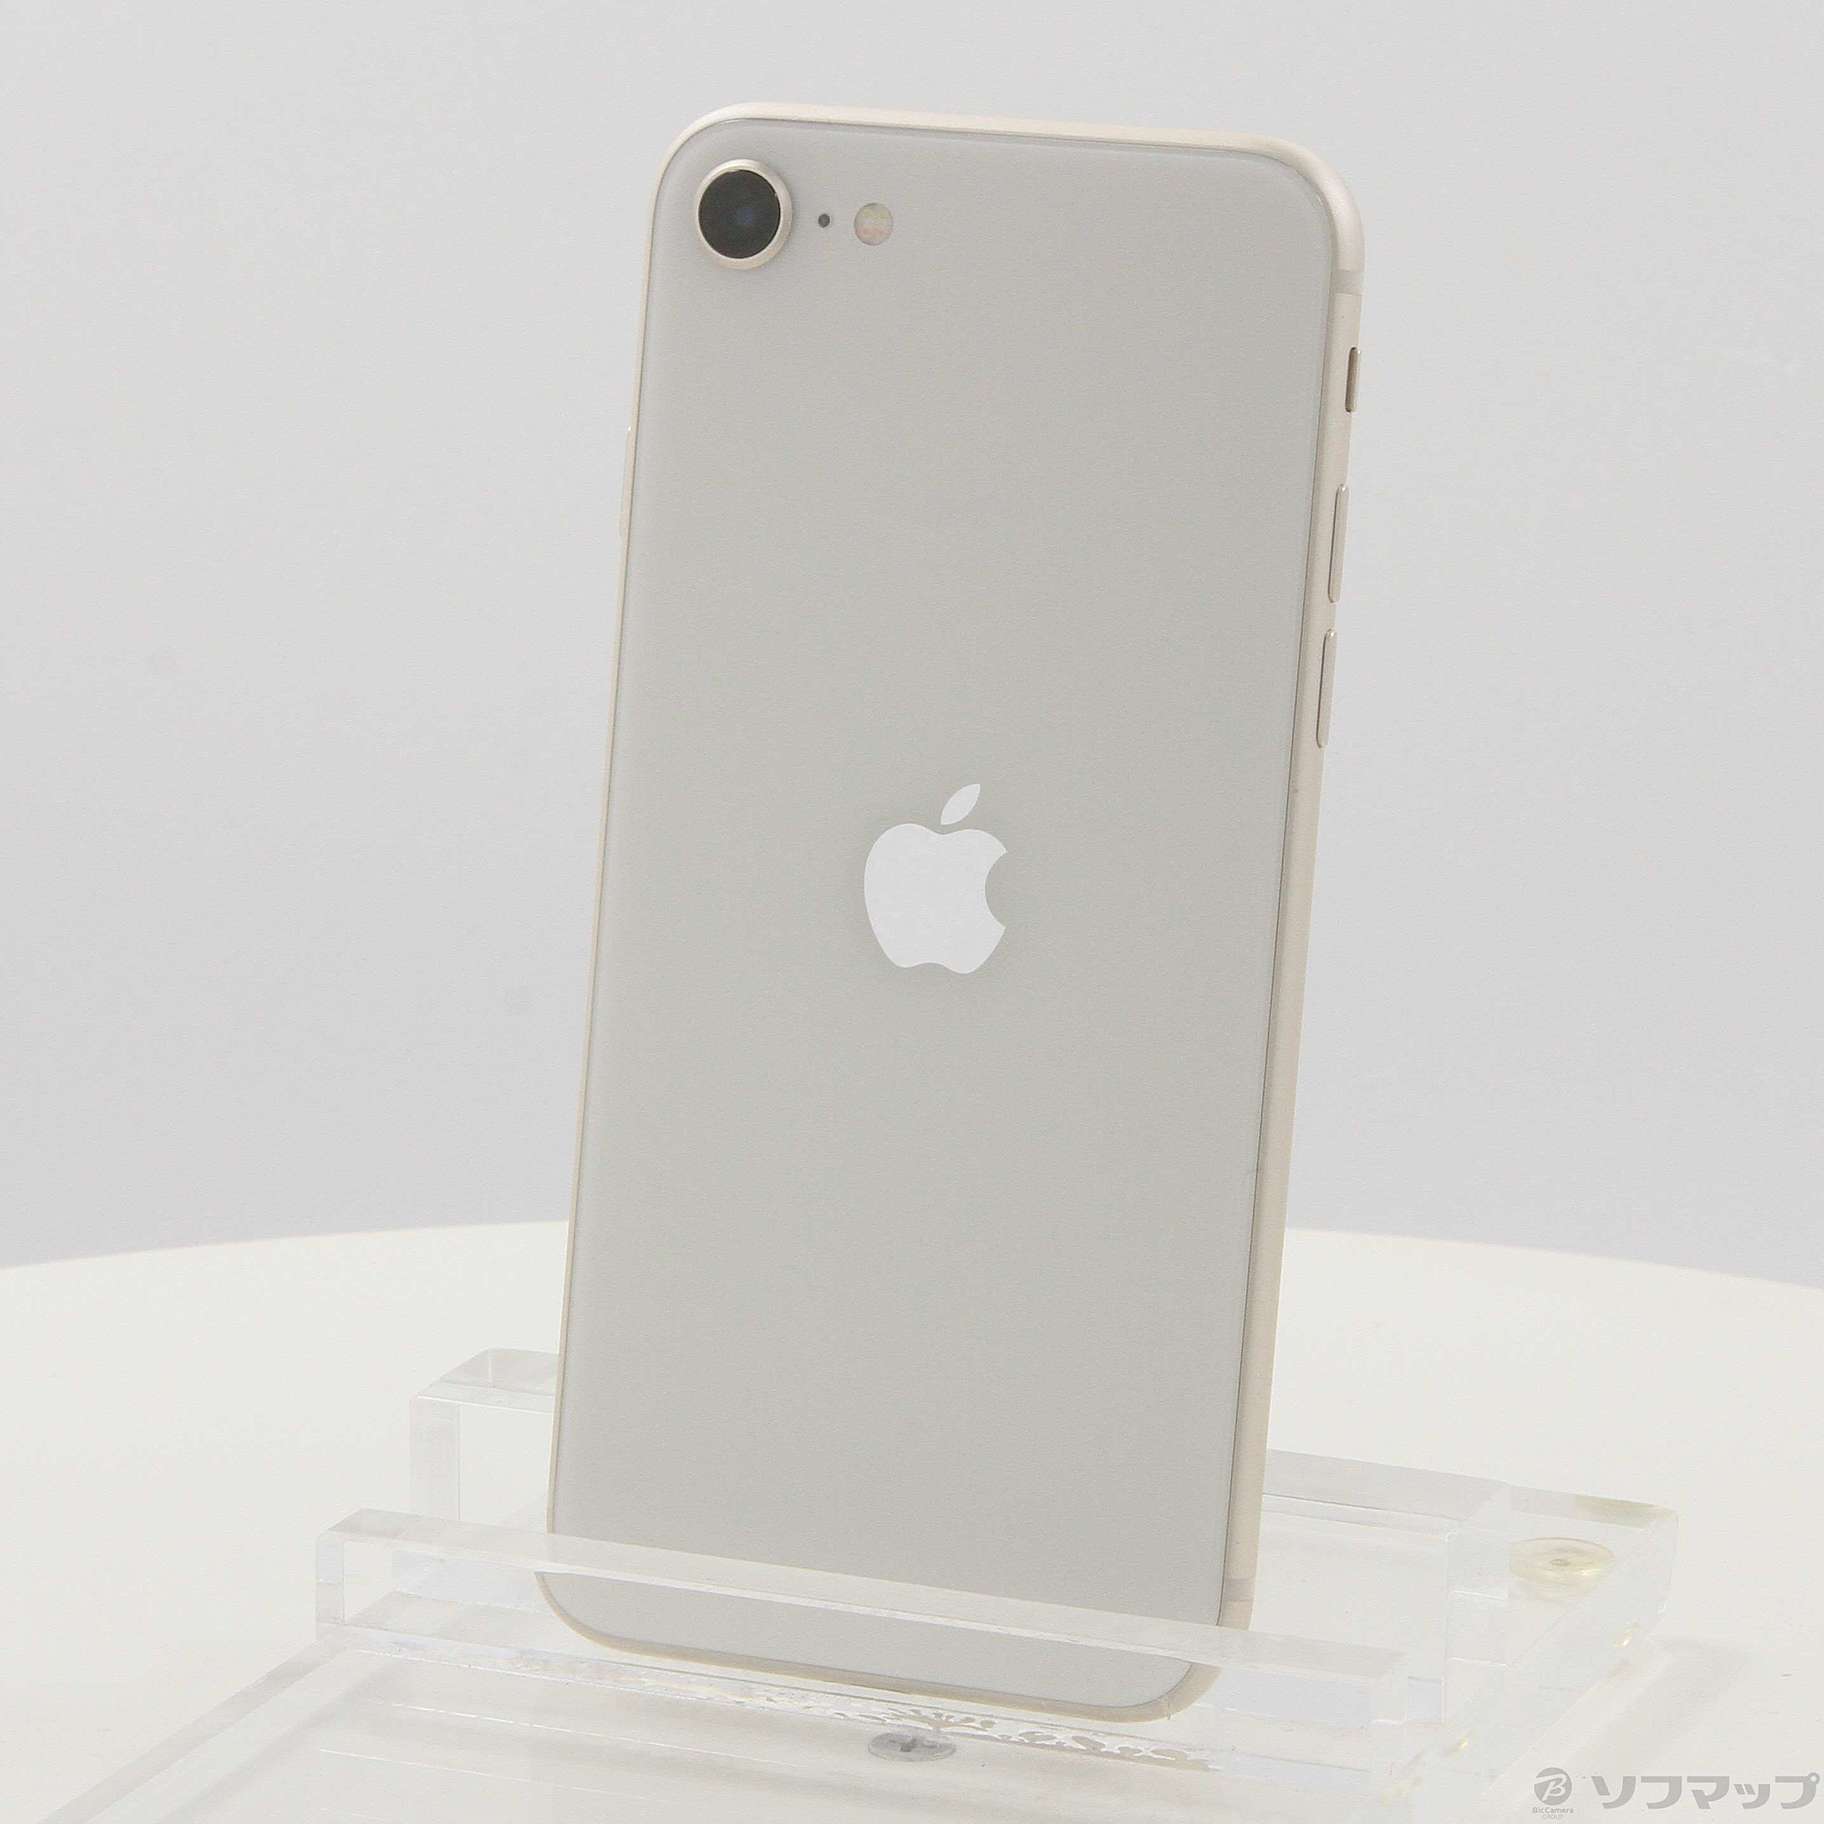 iPhone SE 第3世代 白 スターライト 128 GB SIMフリー - スマートフォン・携帯電話